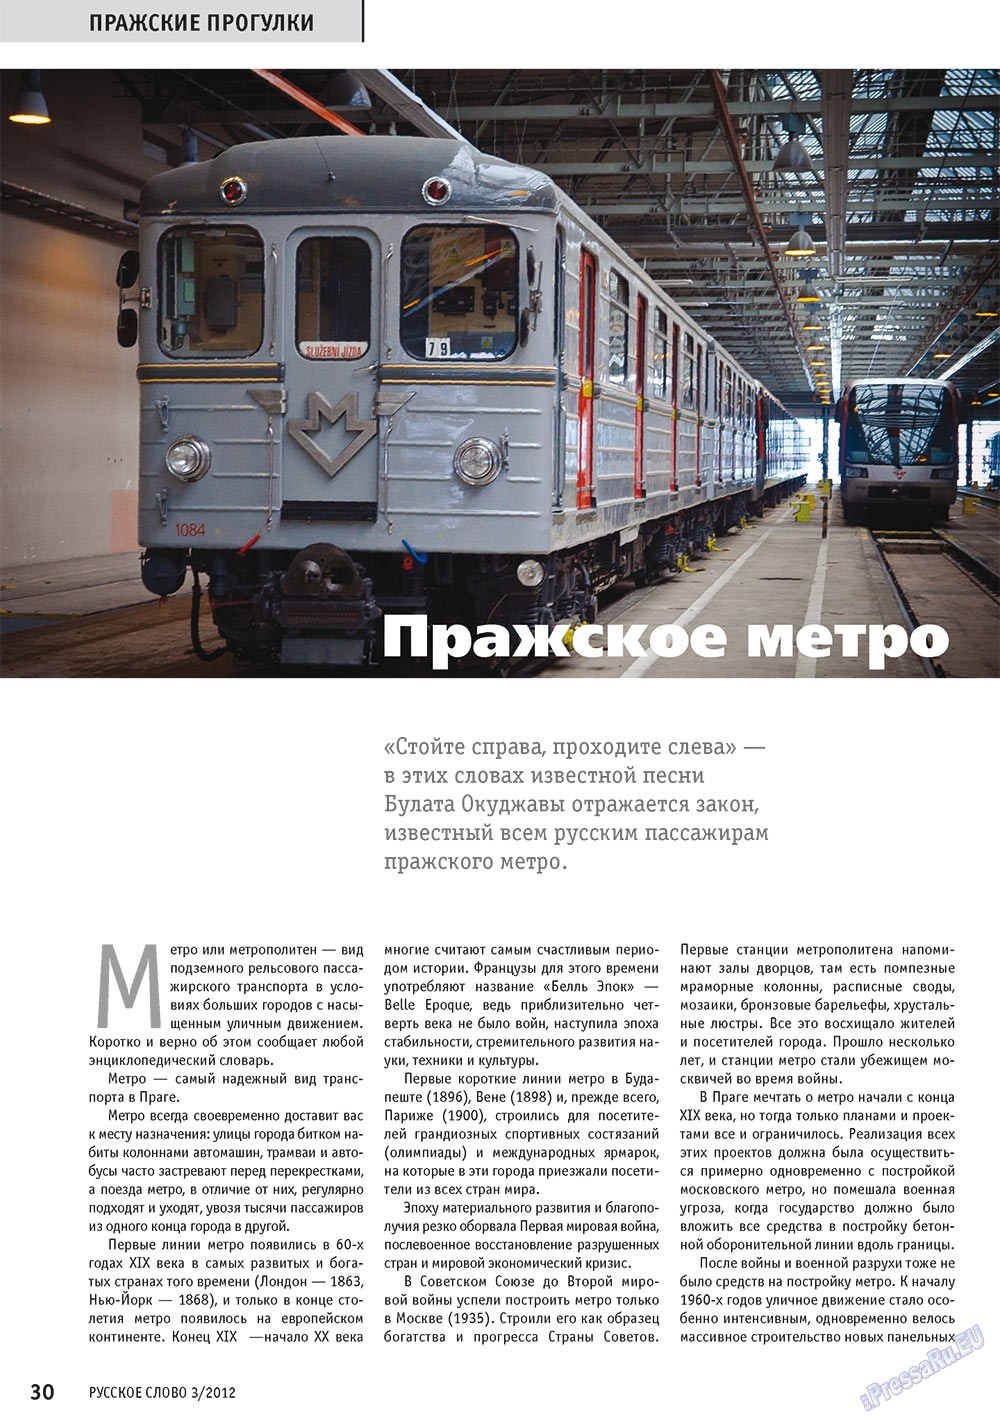 Русское слово, журнал. 2012 №3 стр.31